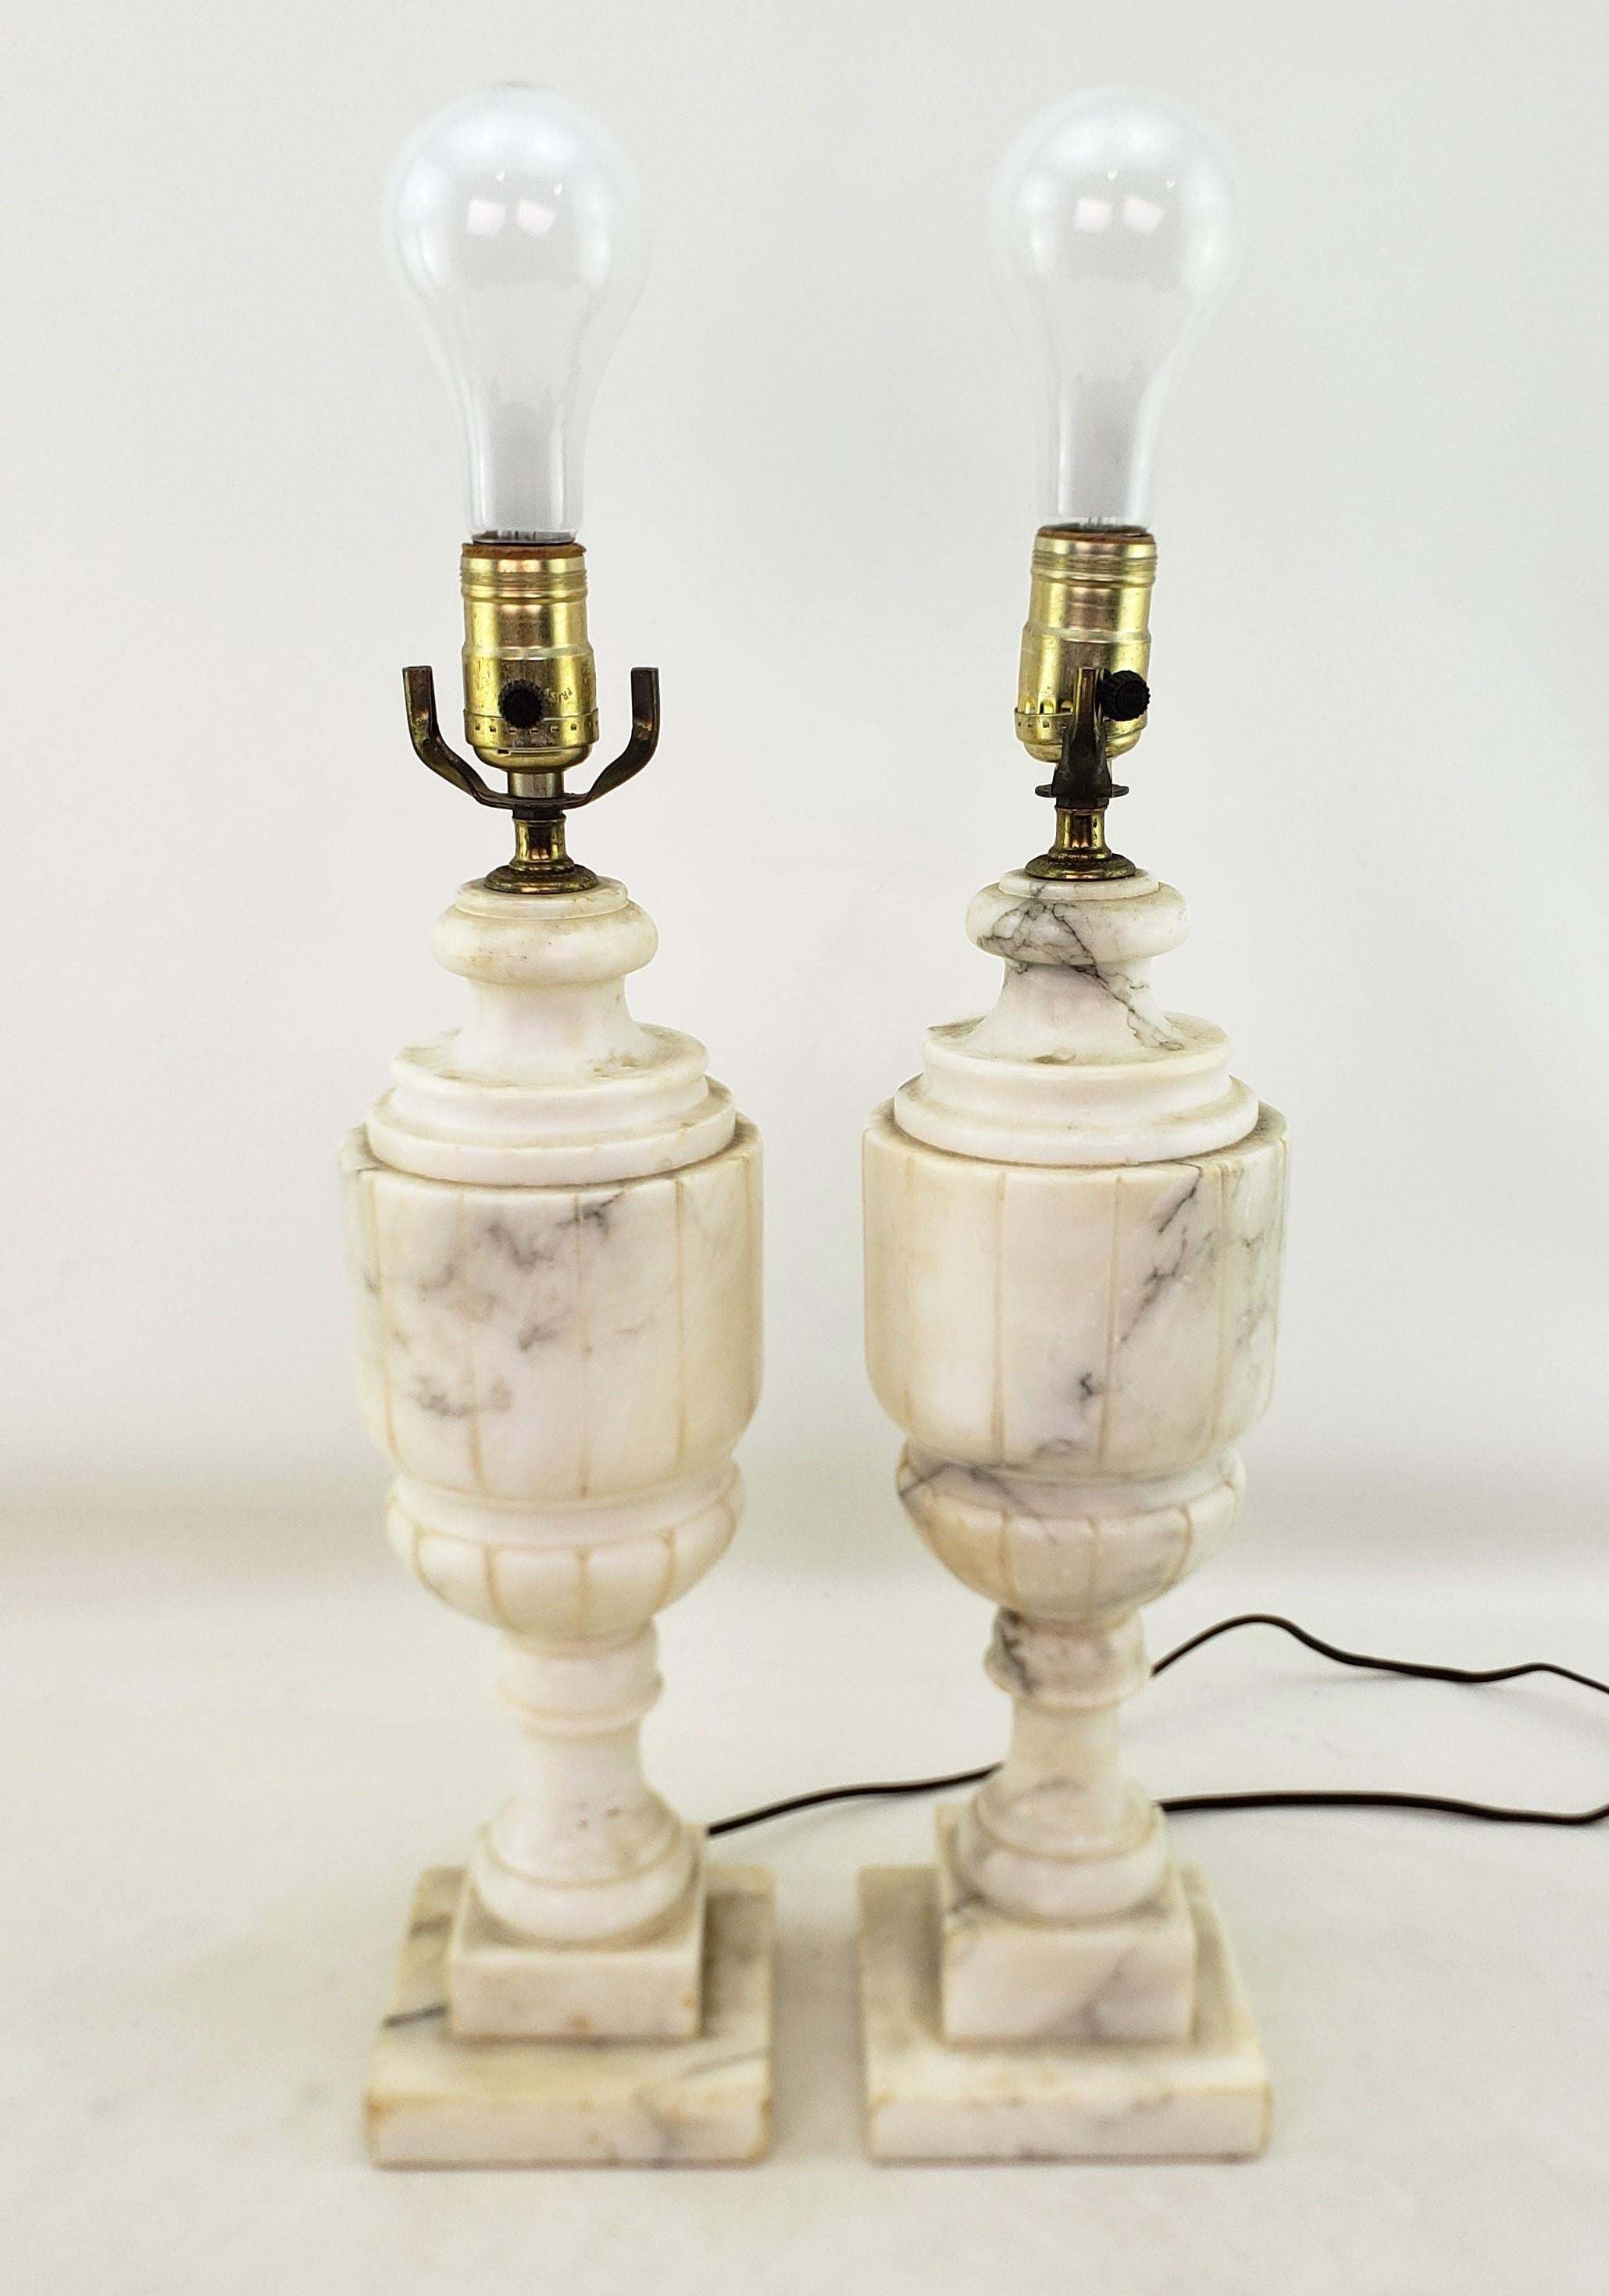 Dieses Paar antiker Lampenfüße ist unsigniert, stammt aber vermutlich aus Italien und ist um 1920 im neoklassizistischen Revival-Stil entstanden. Die Lampen bestehen aus geädertem Alabaster mit einer gerippten Urnenform und Alabasterblocksockeln.